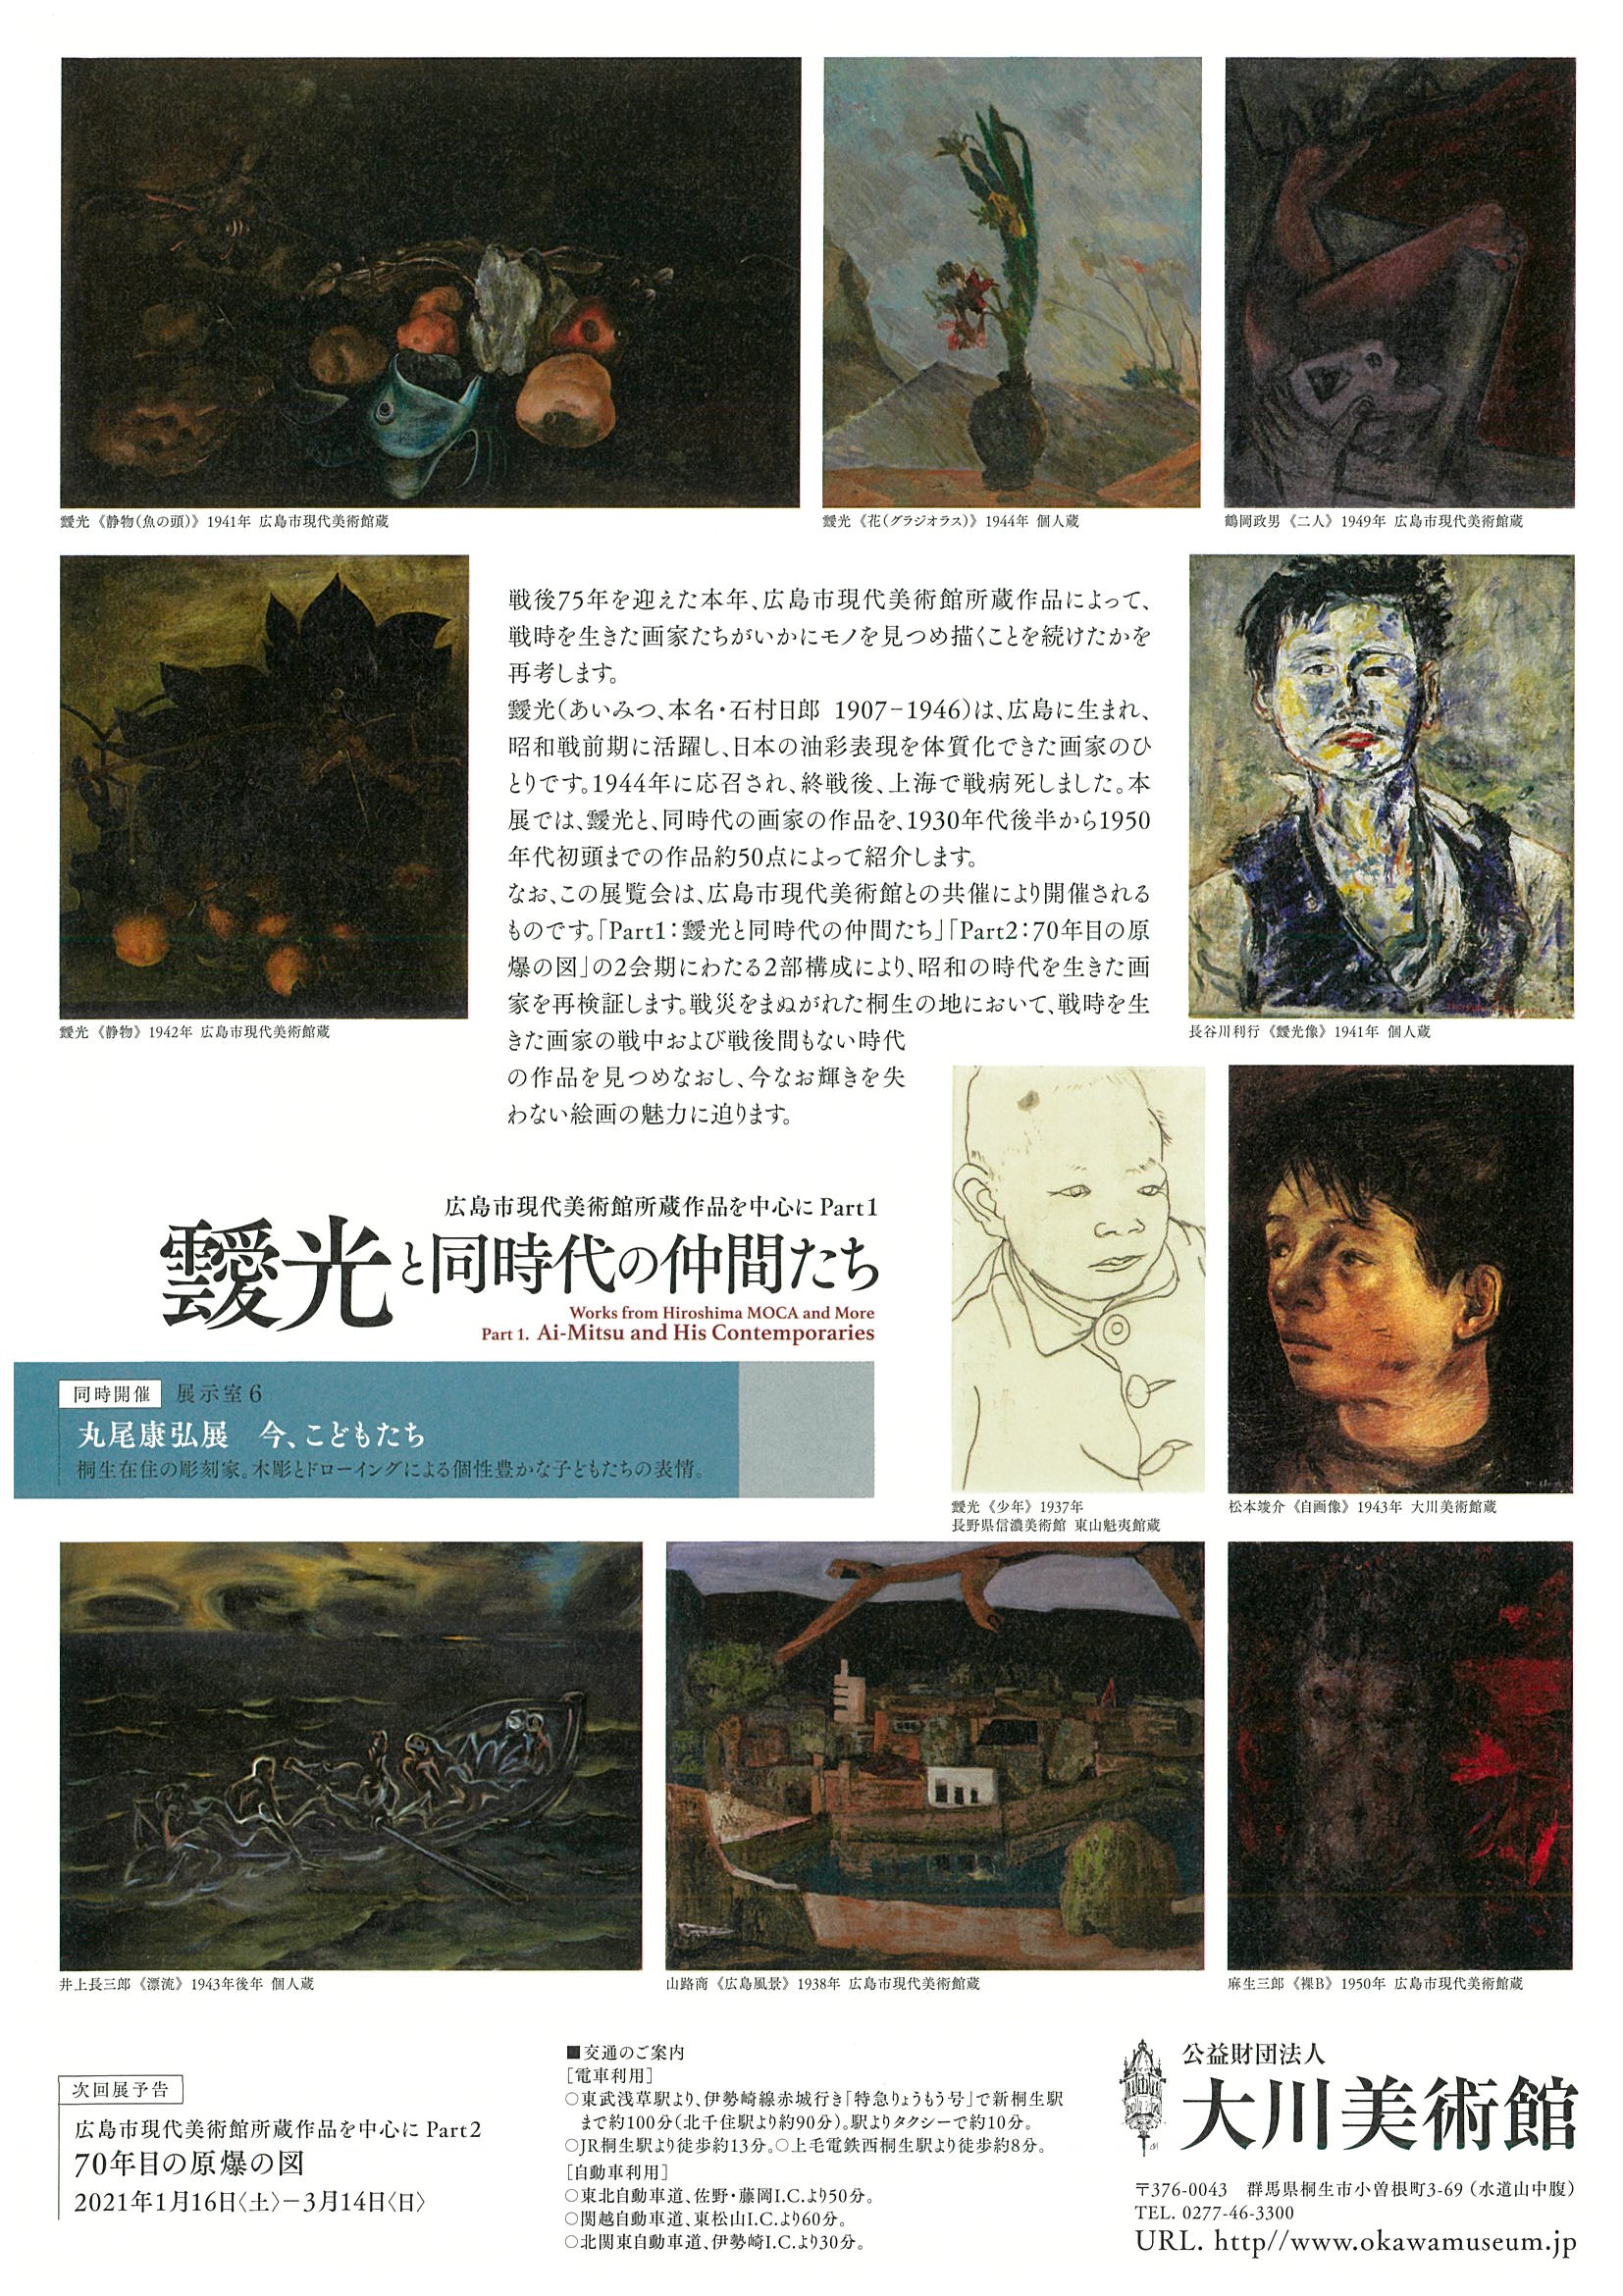 開　幕！

広島市現代美術館所蔵作品を
中心にPart1
「靉光と同時代の仲間たち」

同時開催
「丸尾康弘展
　　　今、こどもたち」
